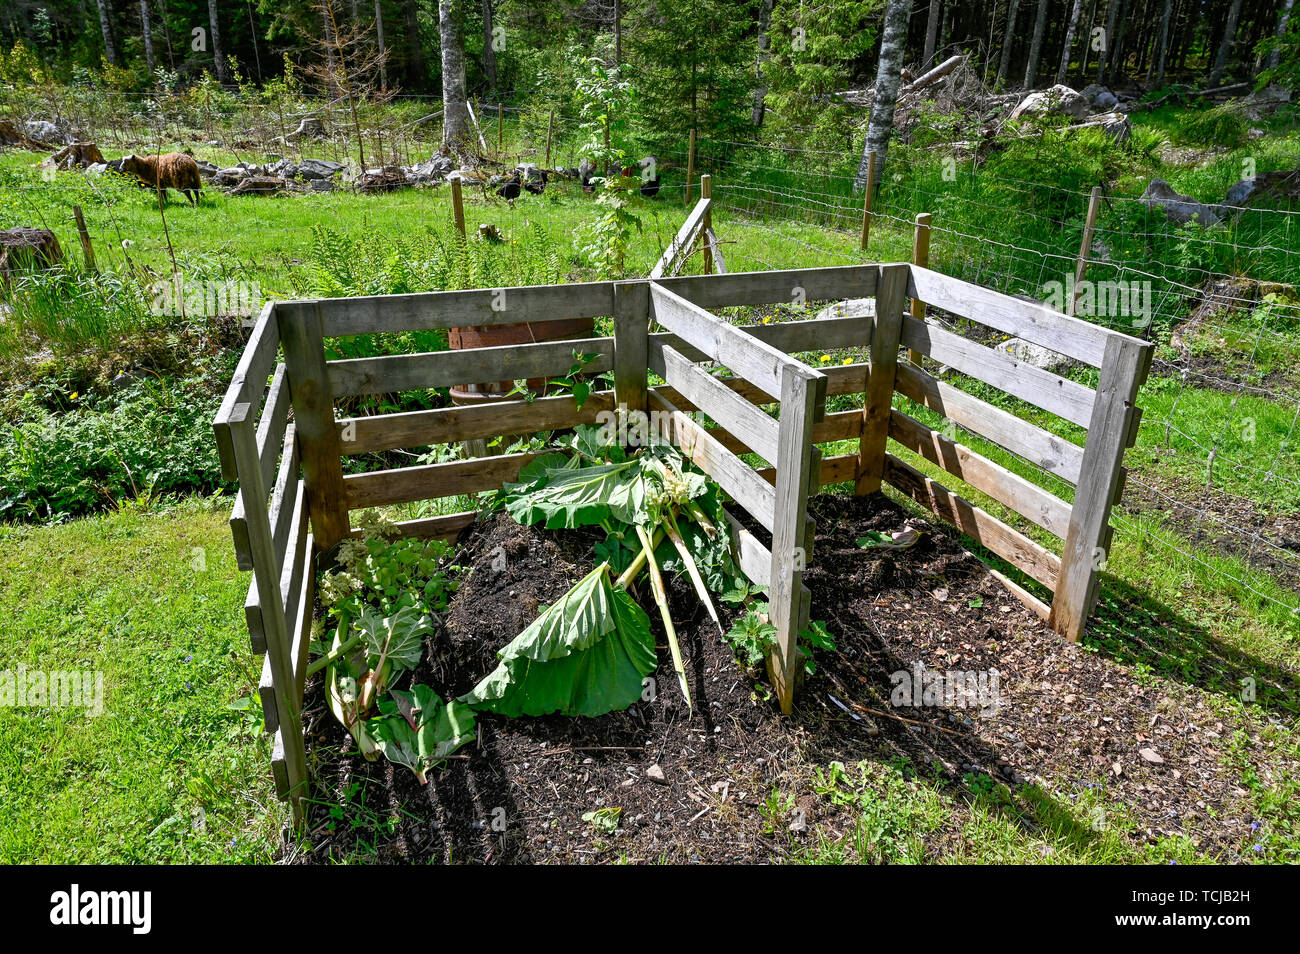 Gartenkompost in einem grünen Garten Stockfoto